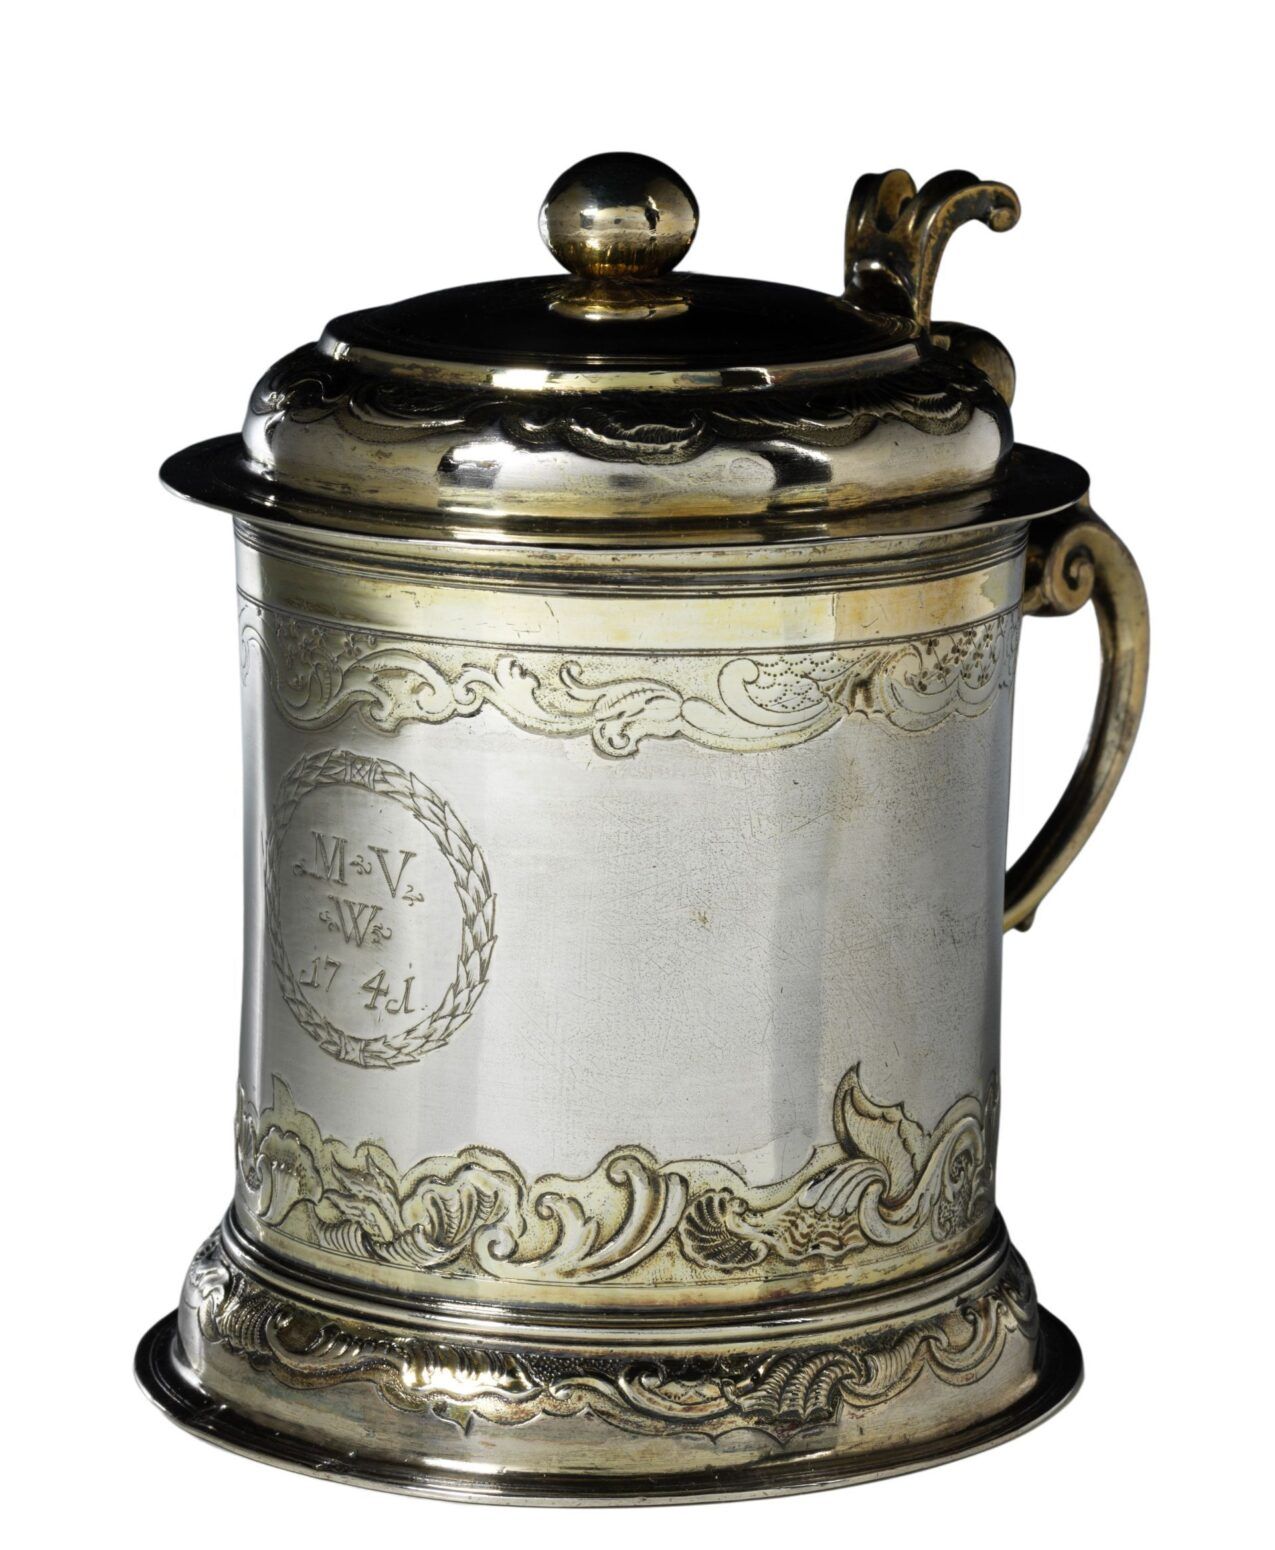 augsburg-silver-tankard-berdolt-18th-century